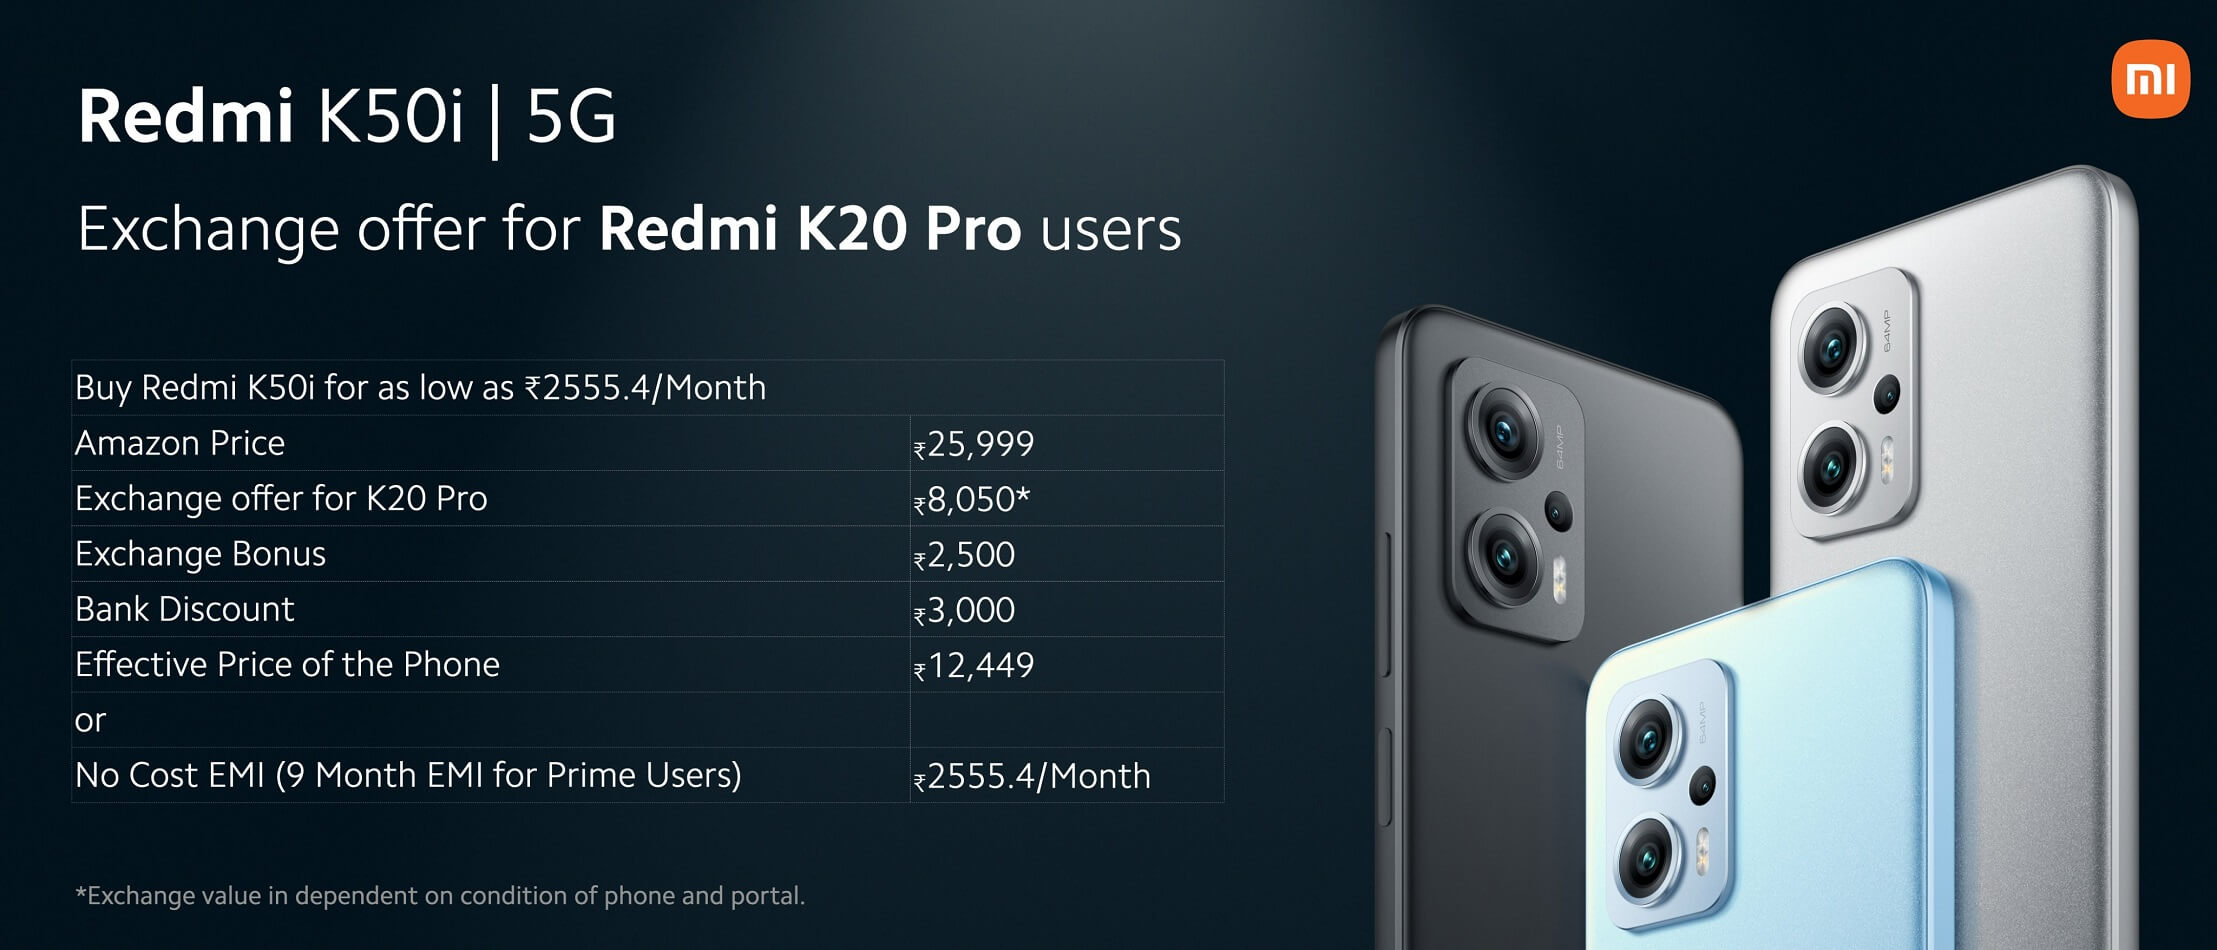 Redmi K50i offers